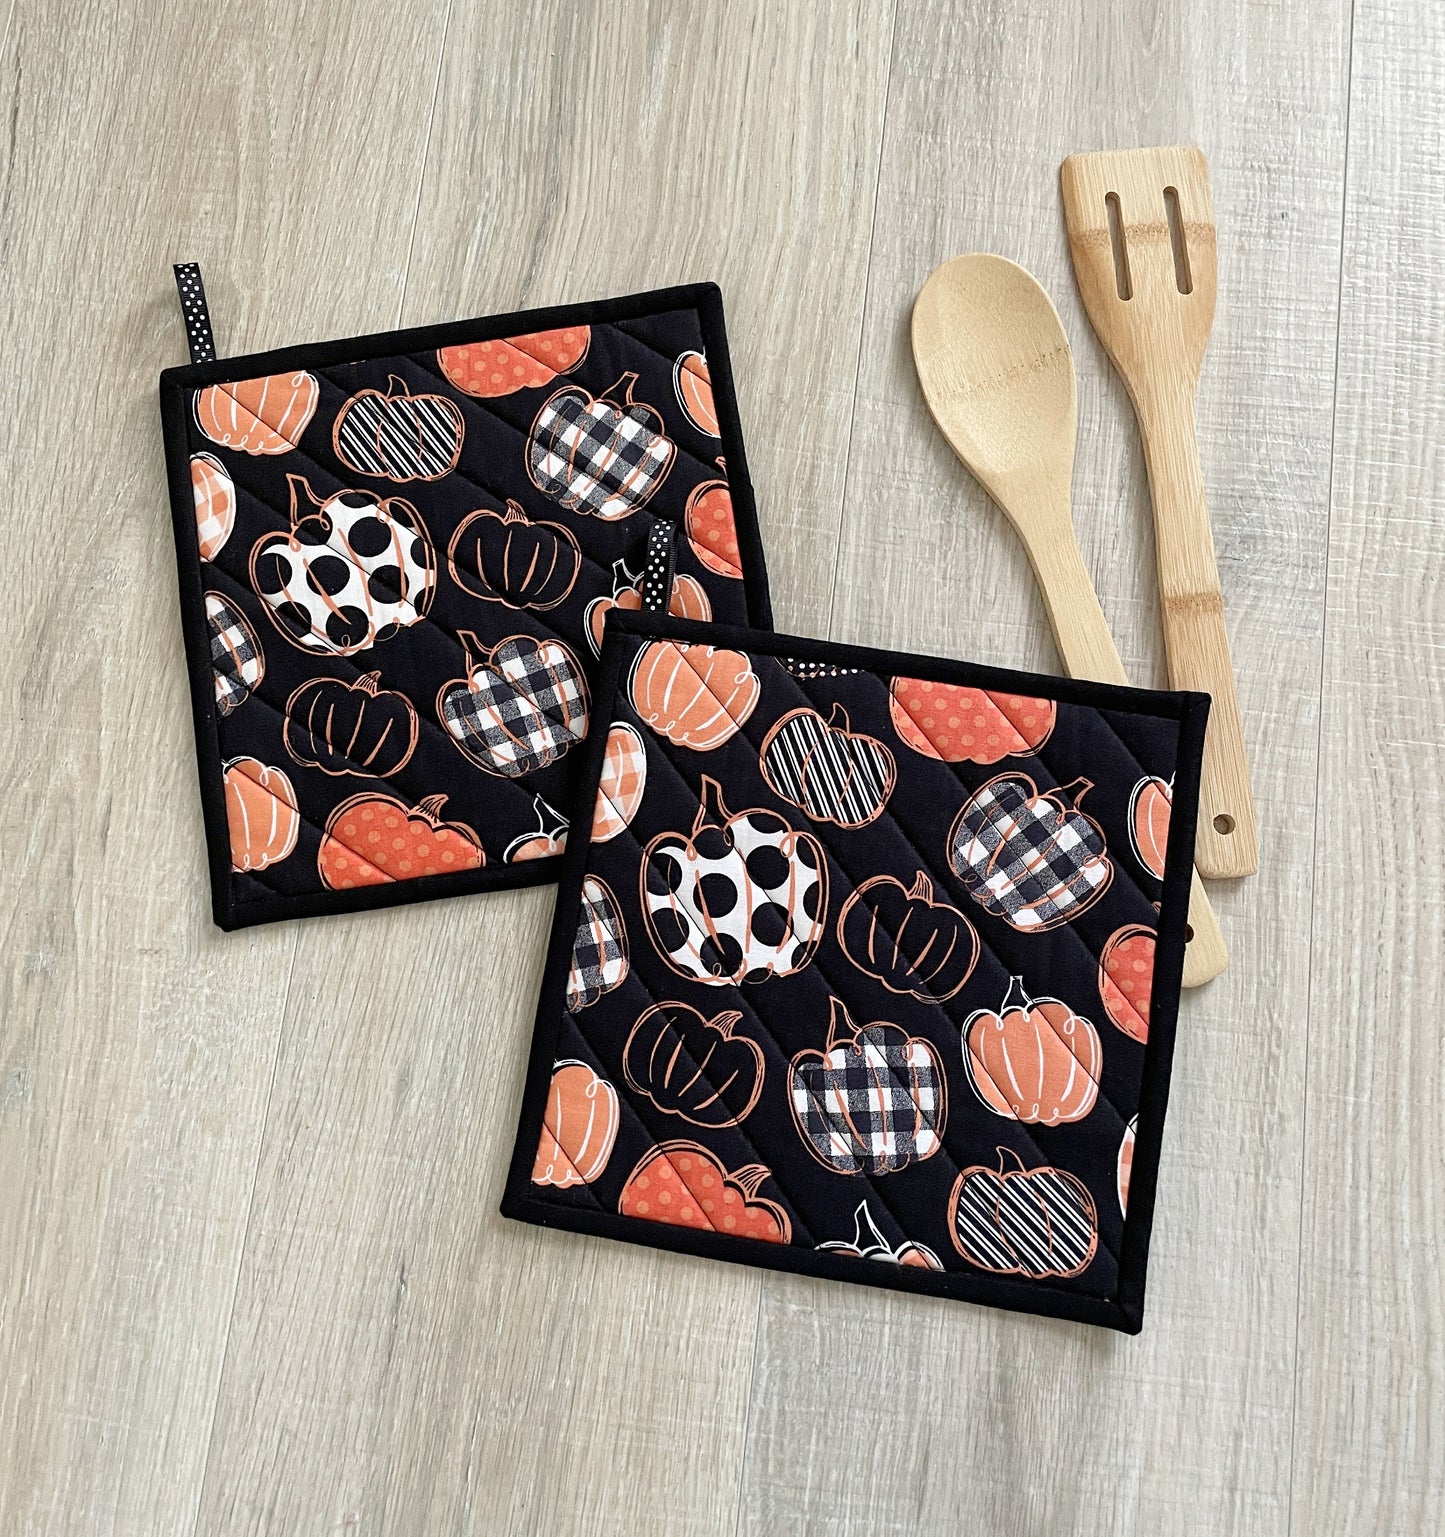 Pumpkin Potholder Set - Quilted Hot Pads for Kitchen Decor